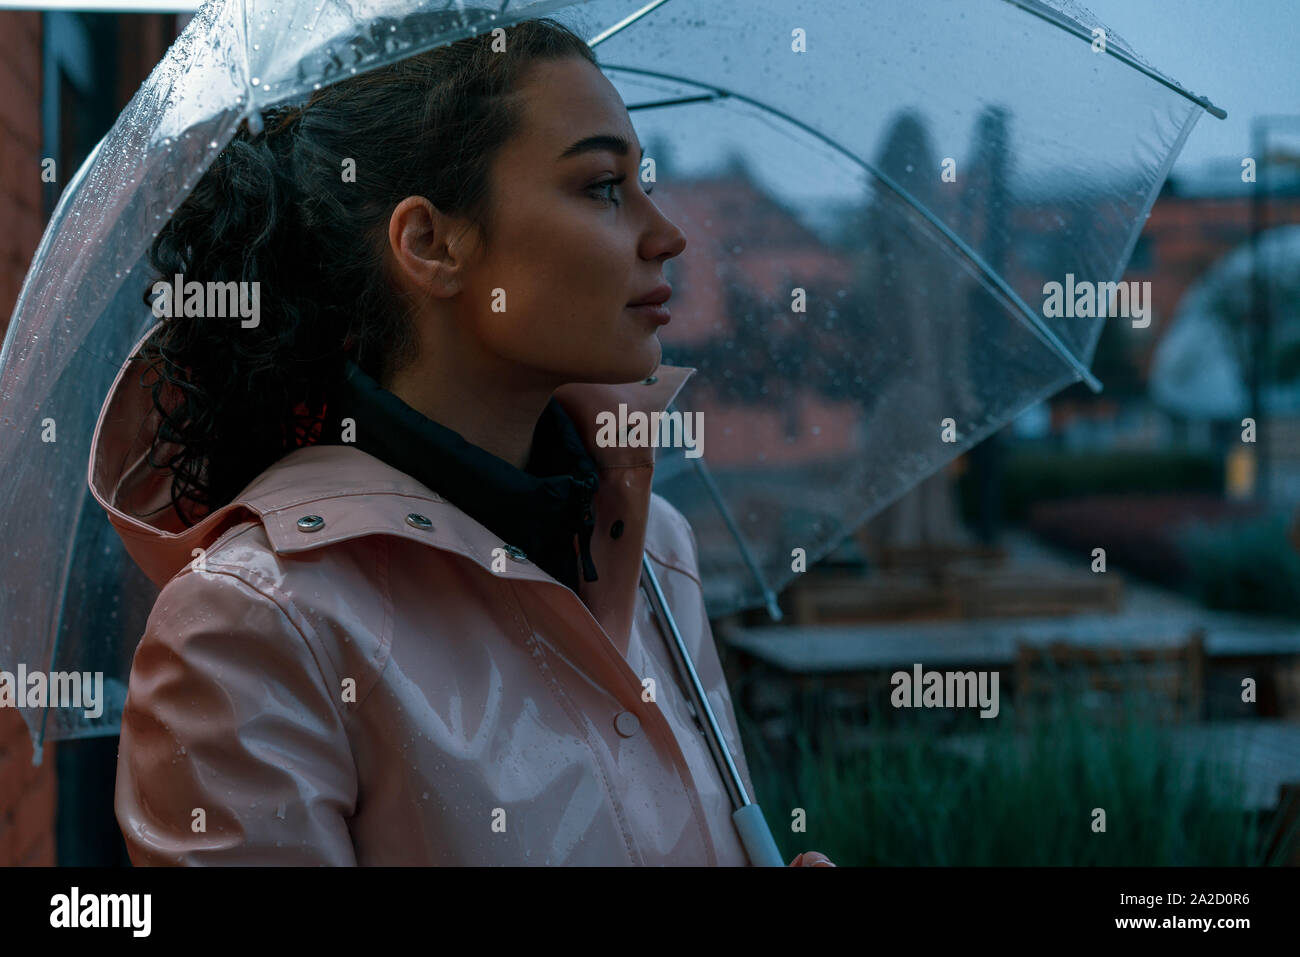 Nachdenklich, hübsches Mädchen Holding transparent Regenschirm während draußen spazieren an regnerischen Herbsttag. Foto sieht aus wie Film oder Film Screenshot. Stockfoto